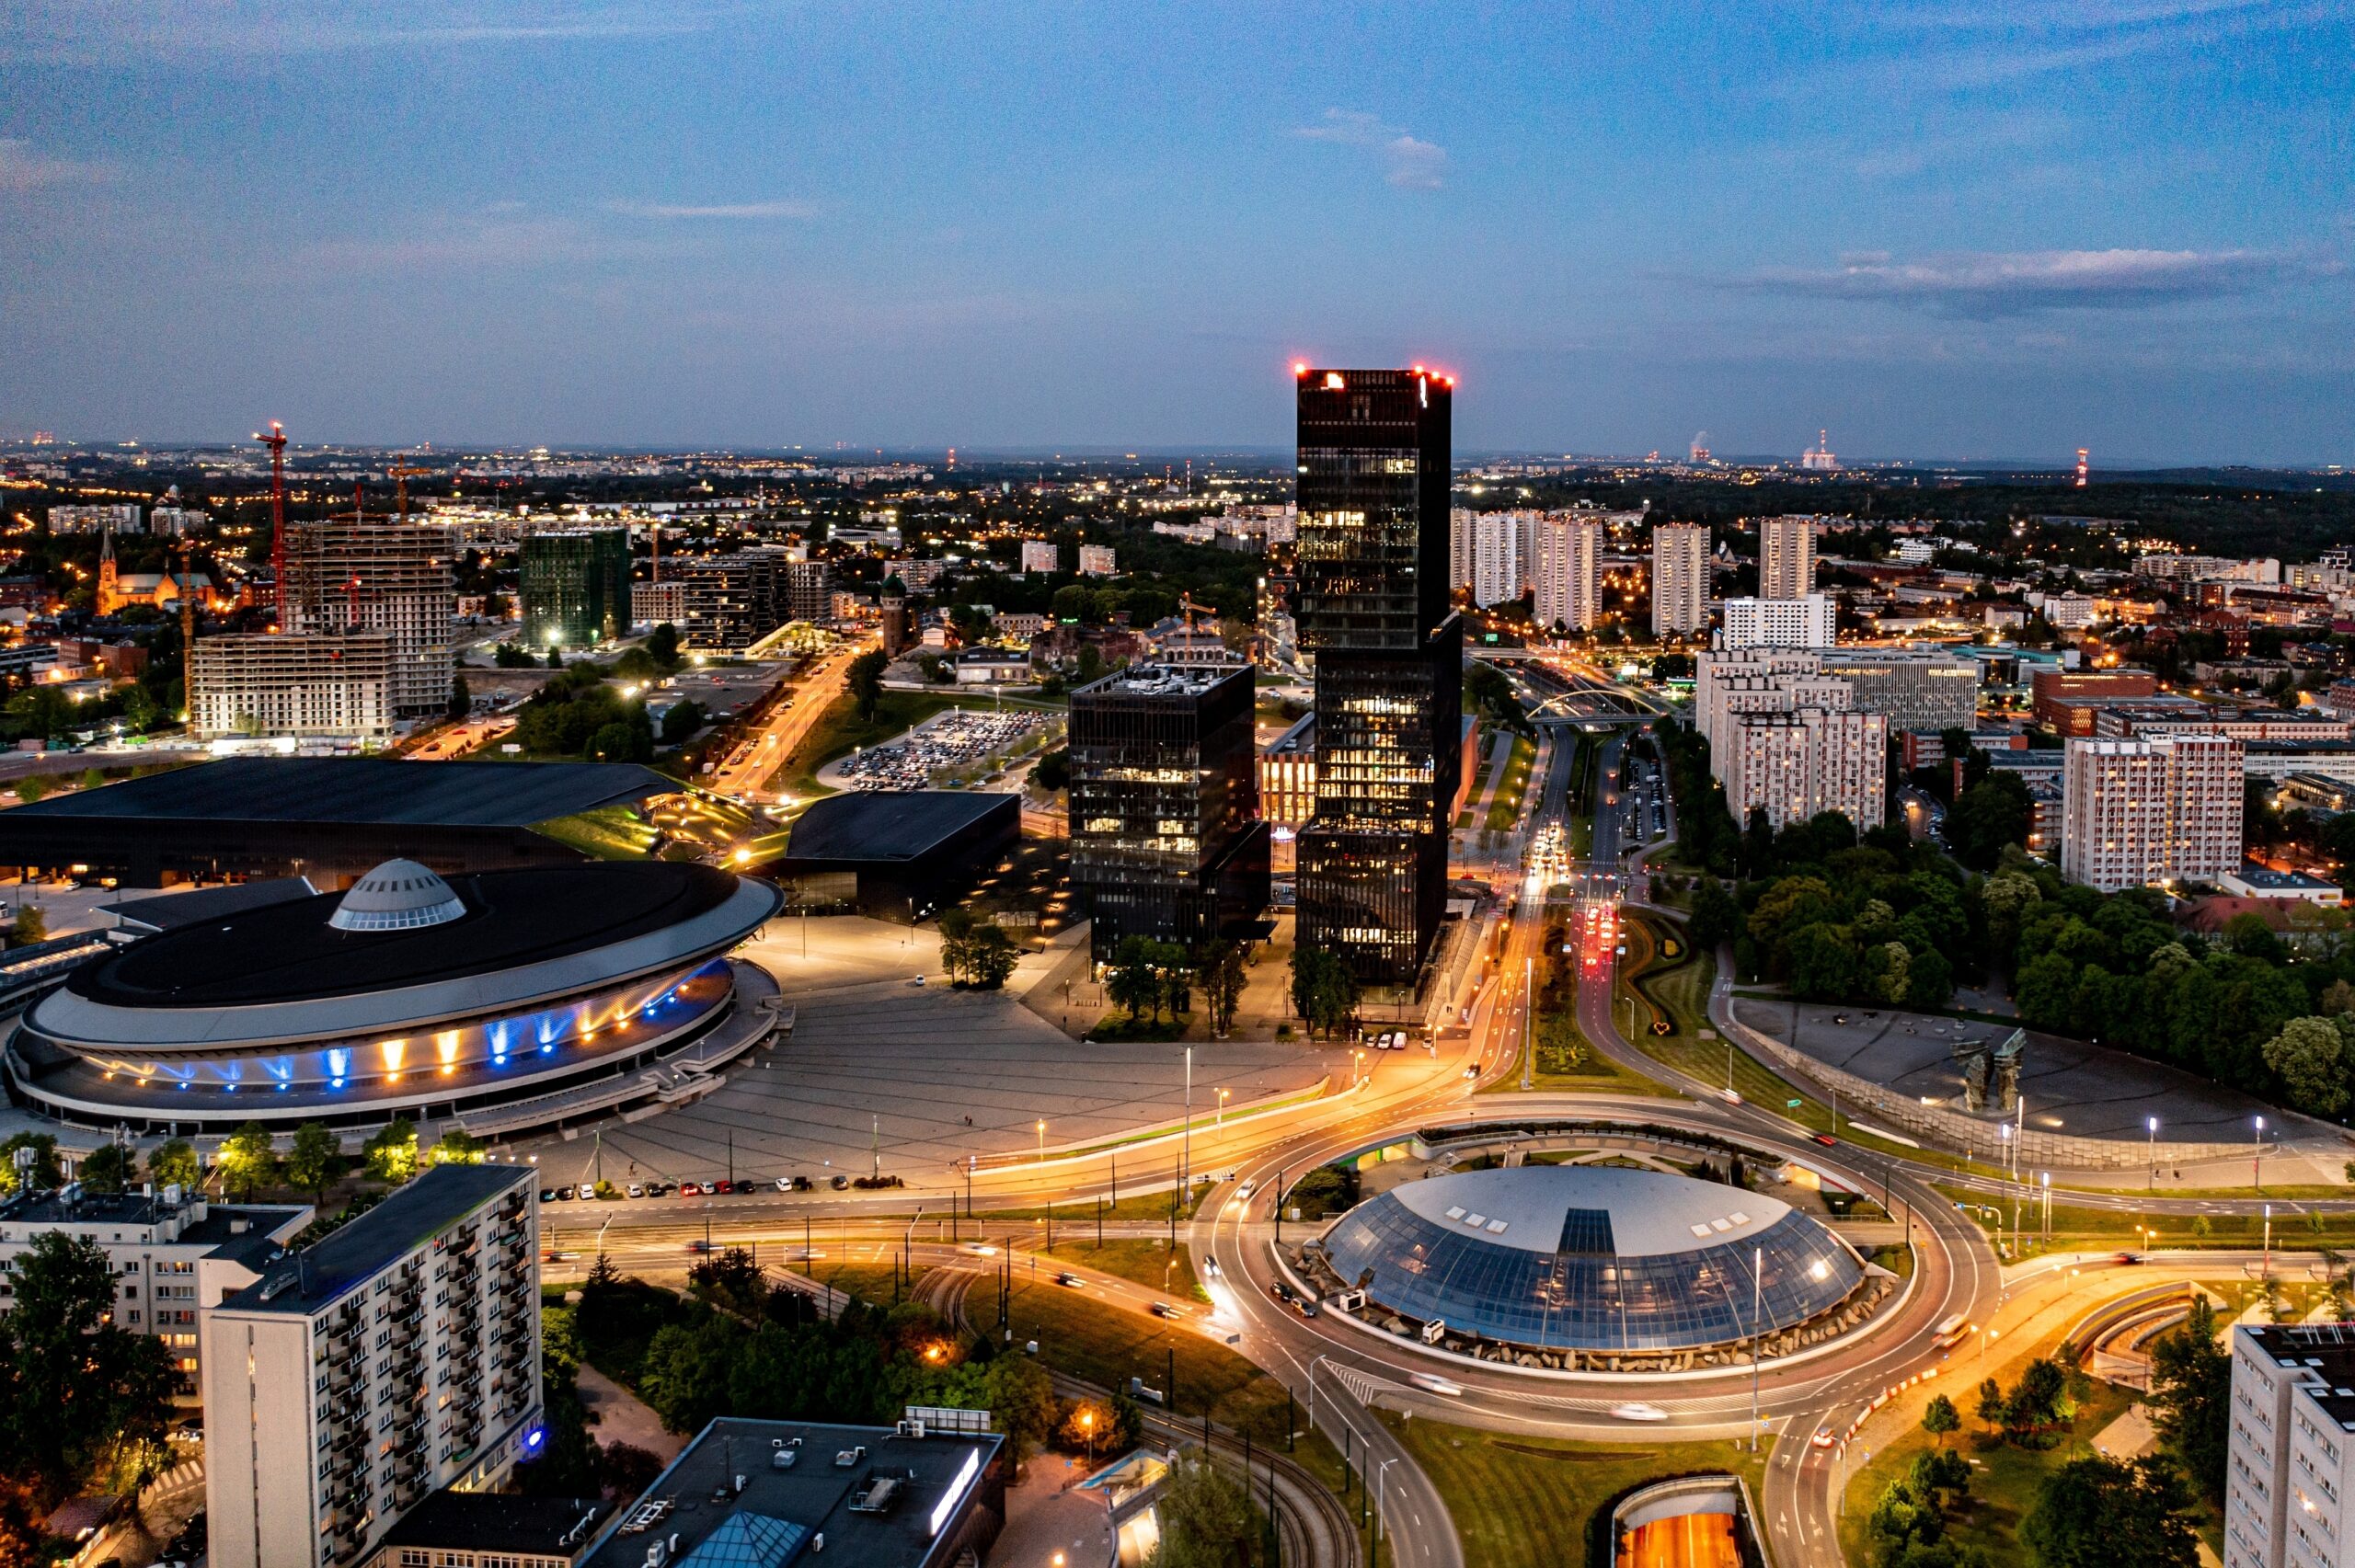 Widok na miasto Katowice z charakterystycznymi budynkami, w tym Spodek i biurowce KTW na pierwszym planie, w tle widoczna panorama miasta, zdjęcie wykonane o zmierzchu.